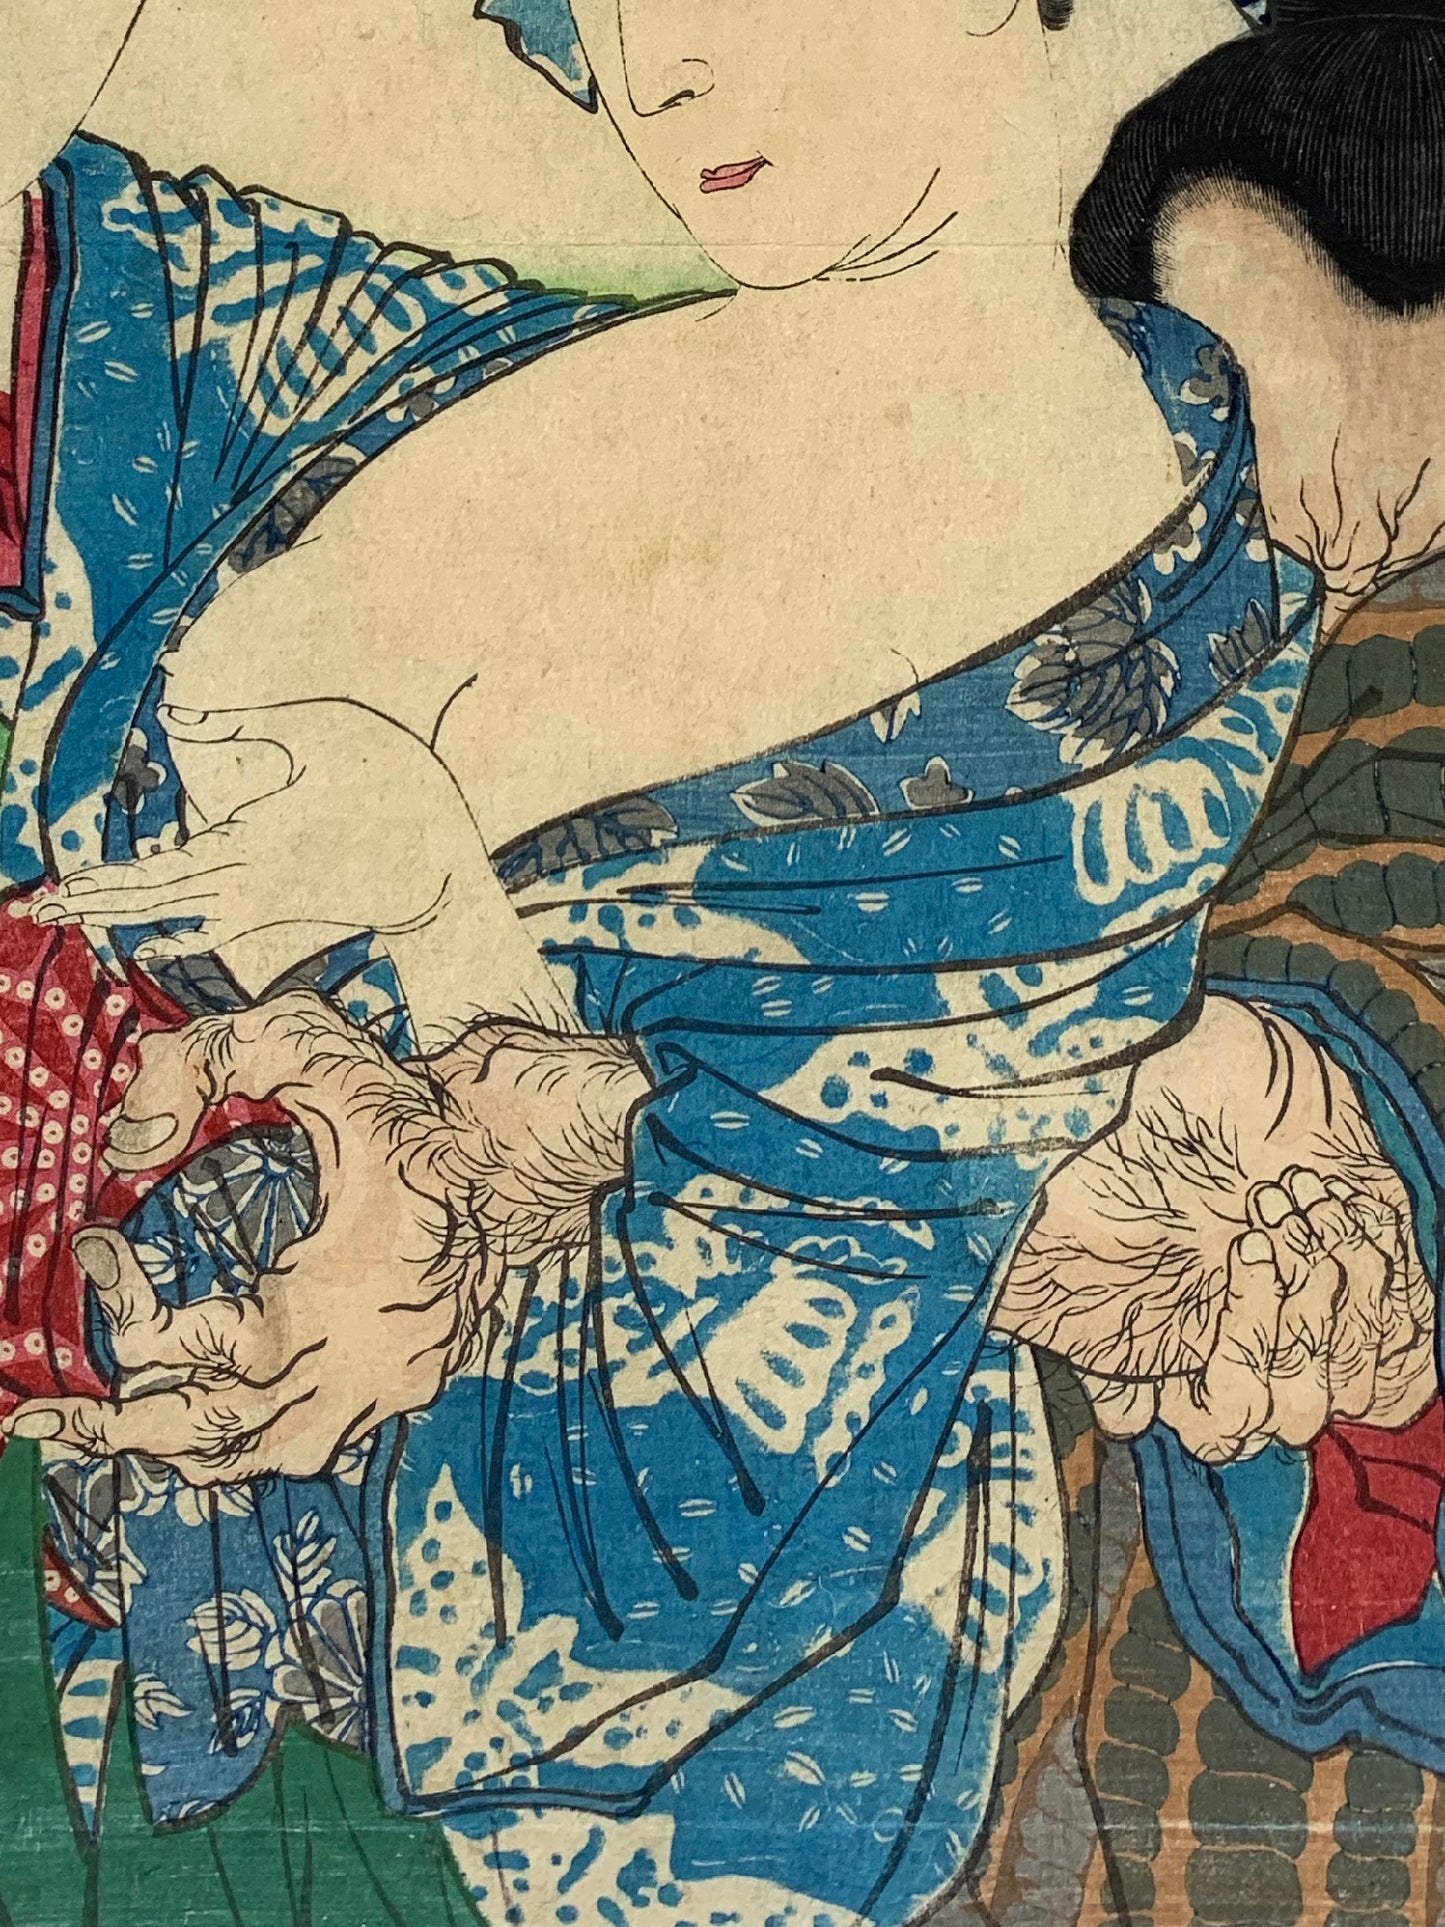 estampe japonaise une femme serre le bras dans homme voulant toucher son sein dénudé, gros plan sur le bras poilu de l'homme  et le kimono